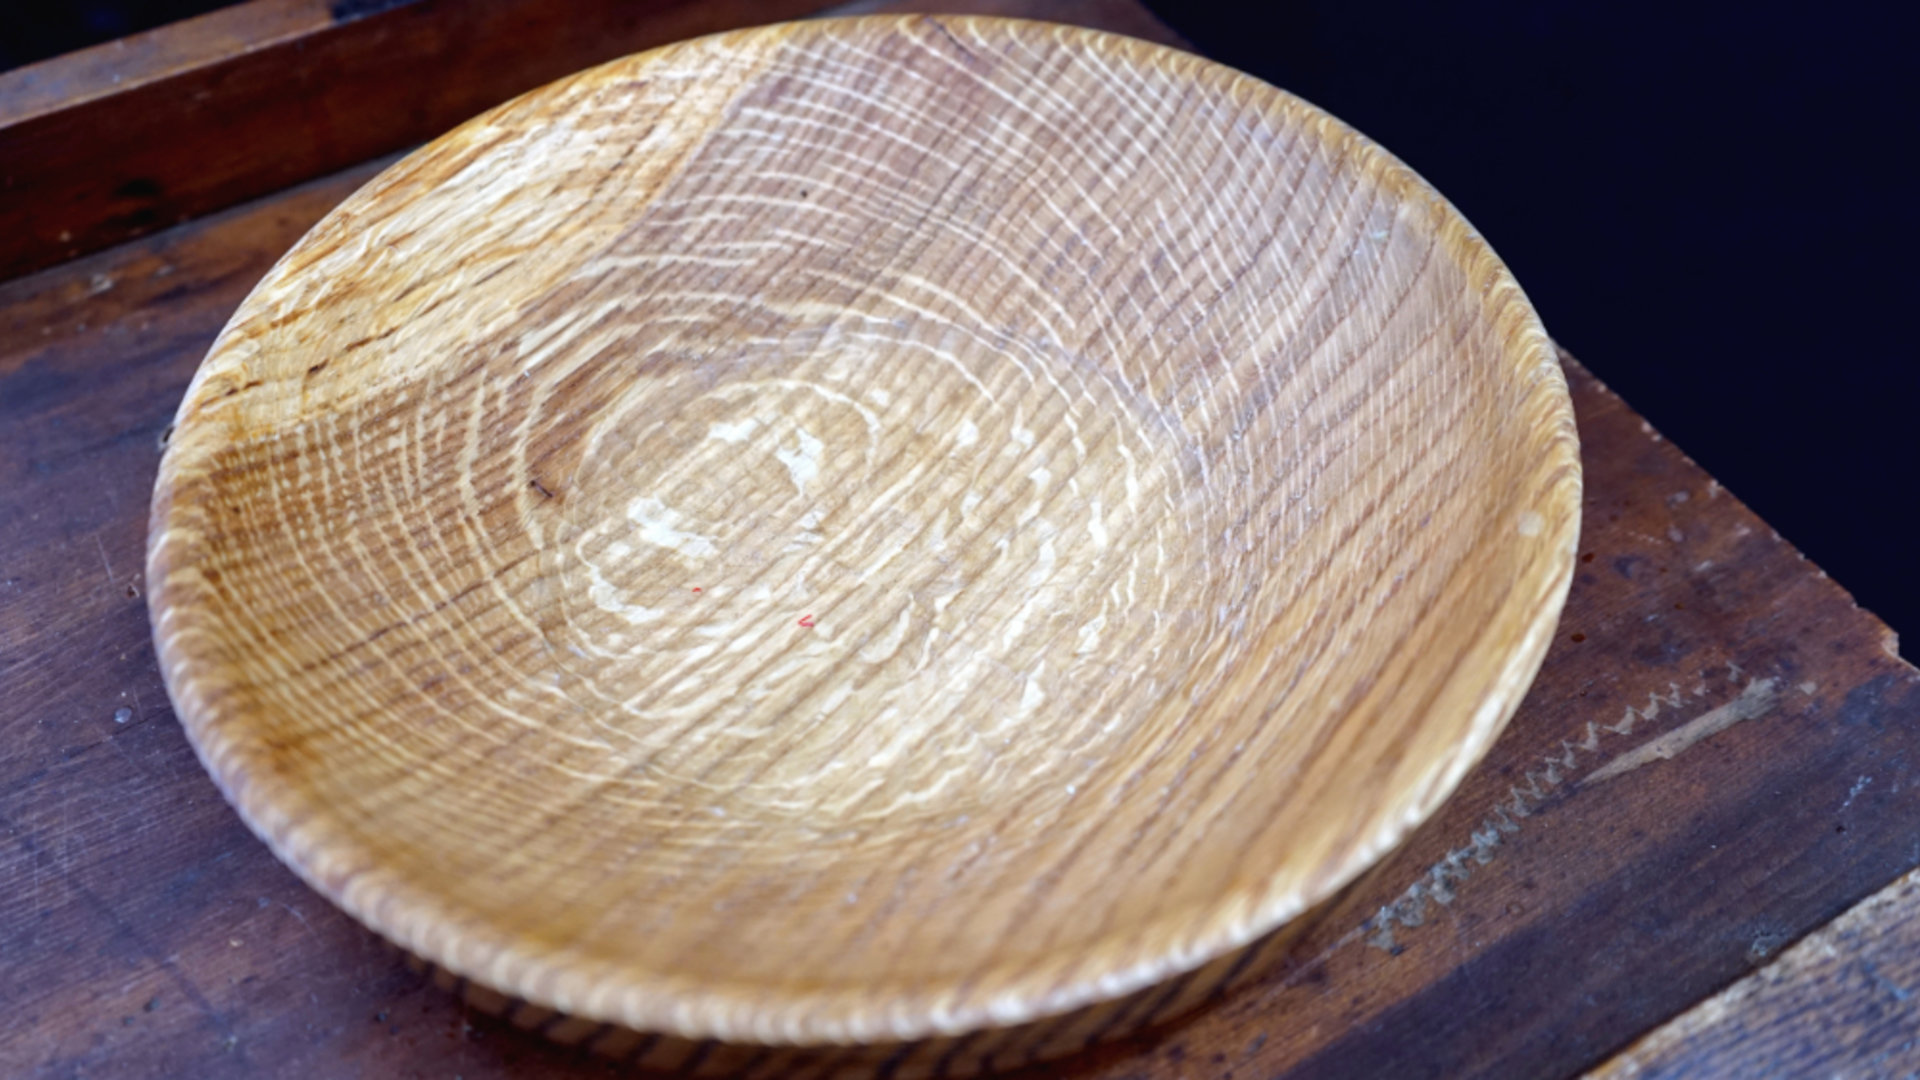 White oak bowl